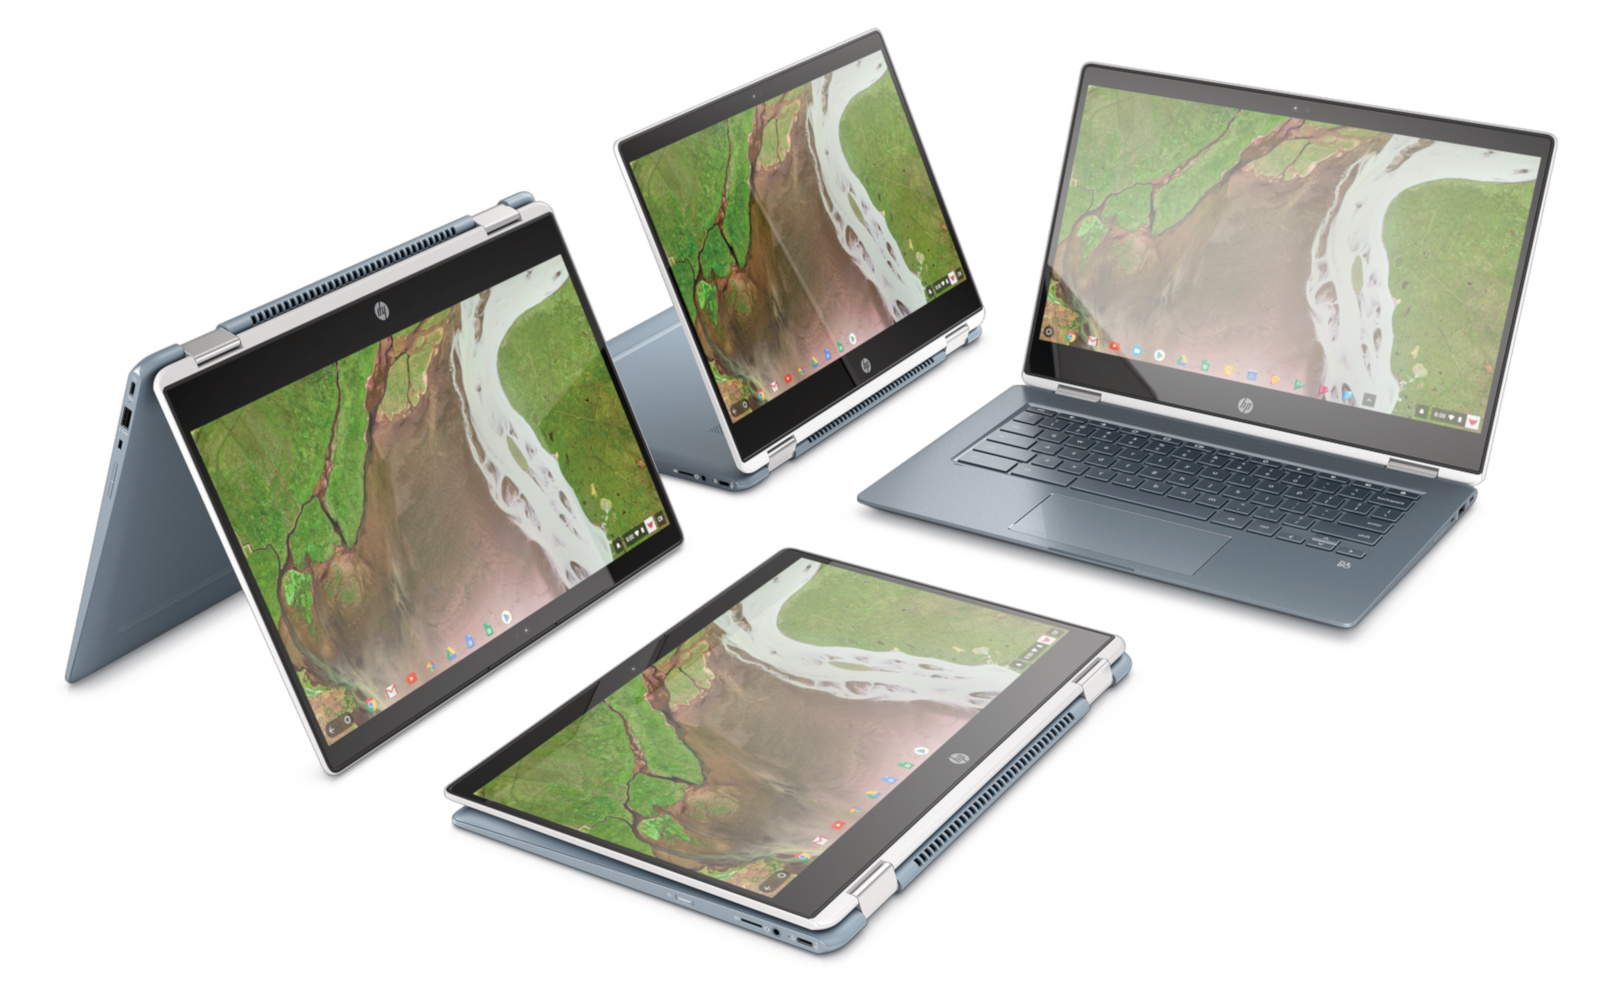 HP chính thức bán ra
Chromebook x360 14, giá khởi điểm từ 599USD cho cấu hình
Intel Core i3